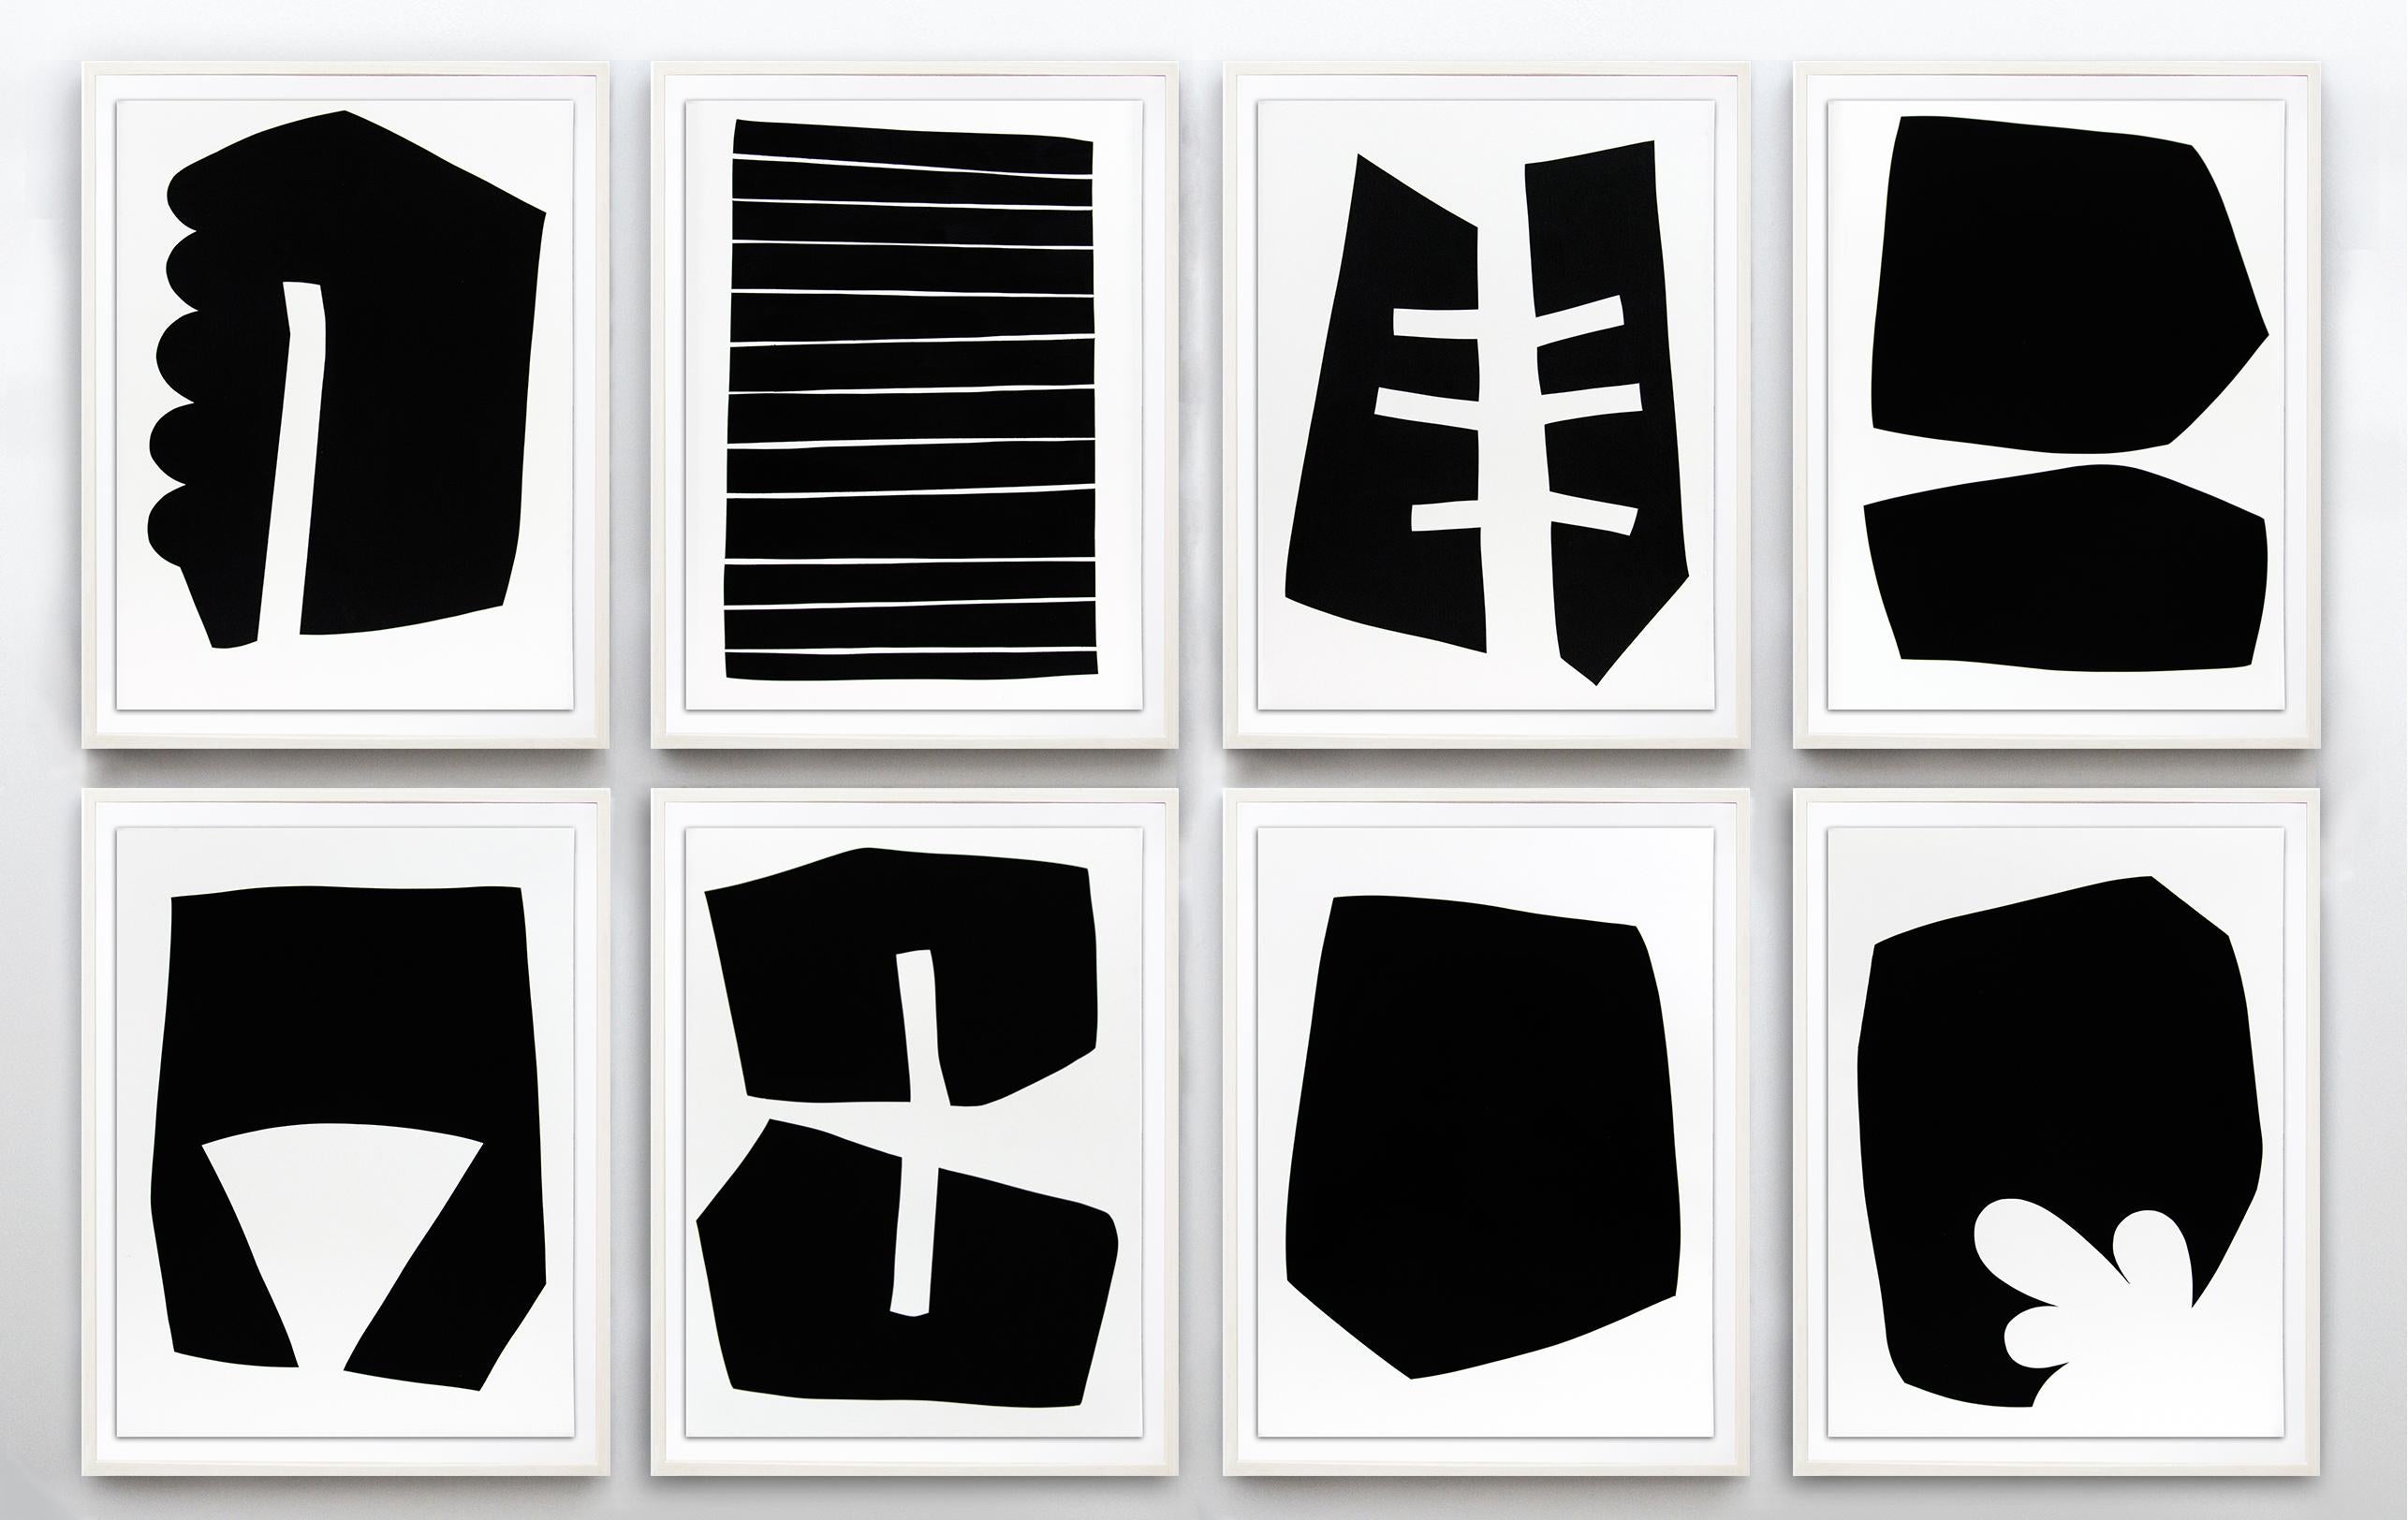 Suite de huit tirages (édition 9/20) - série de formes abstraites sur papier